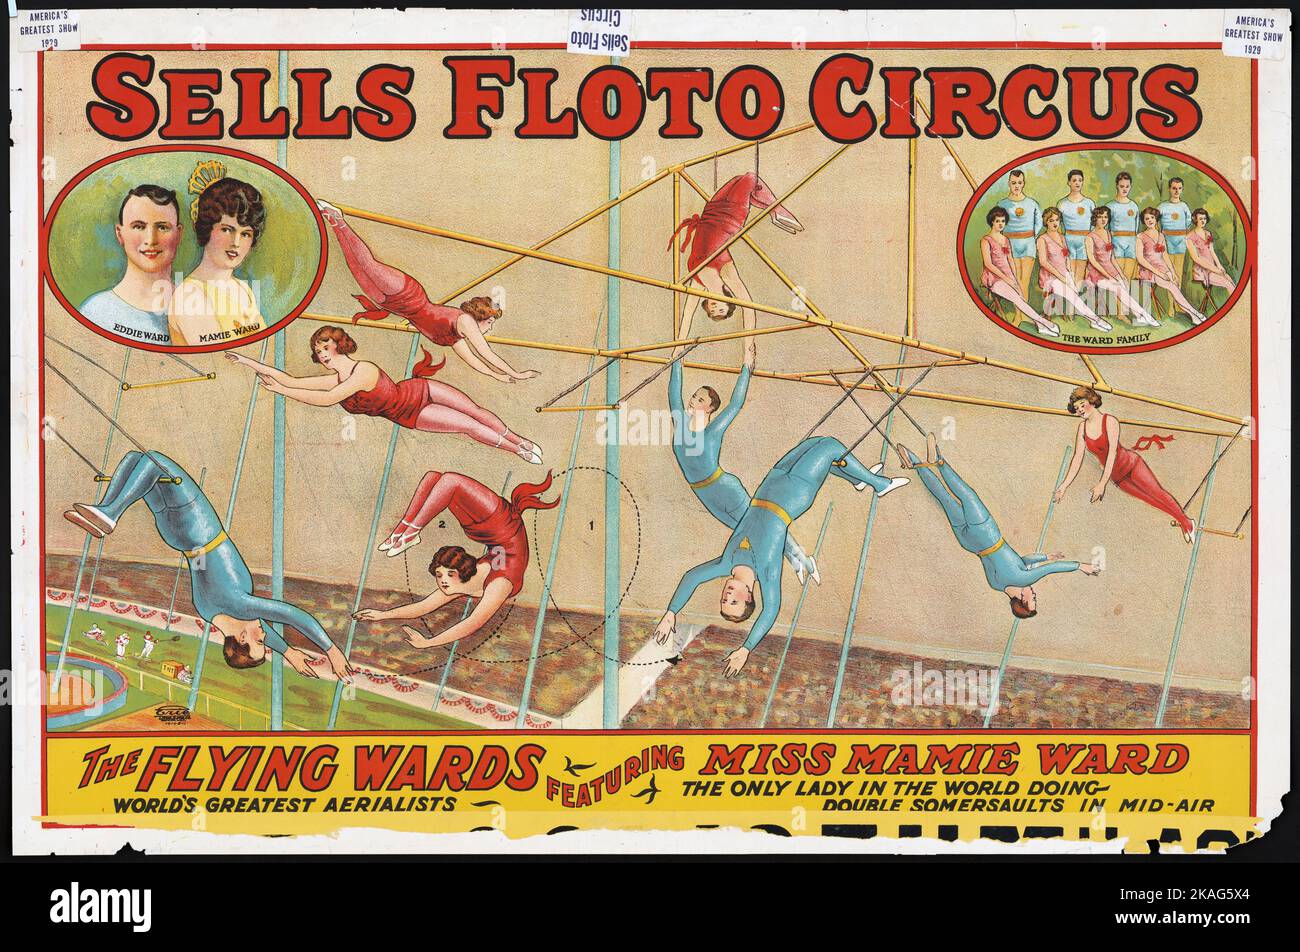 Verkauft Floto Zirkus The Flying Wards mit Miss Mamie ward - Zirkus-Poster, auf dem neun Aerialisten 1929 aufführen Stockfoto